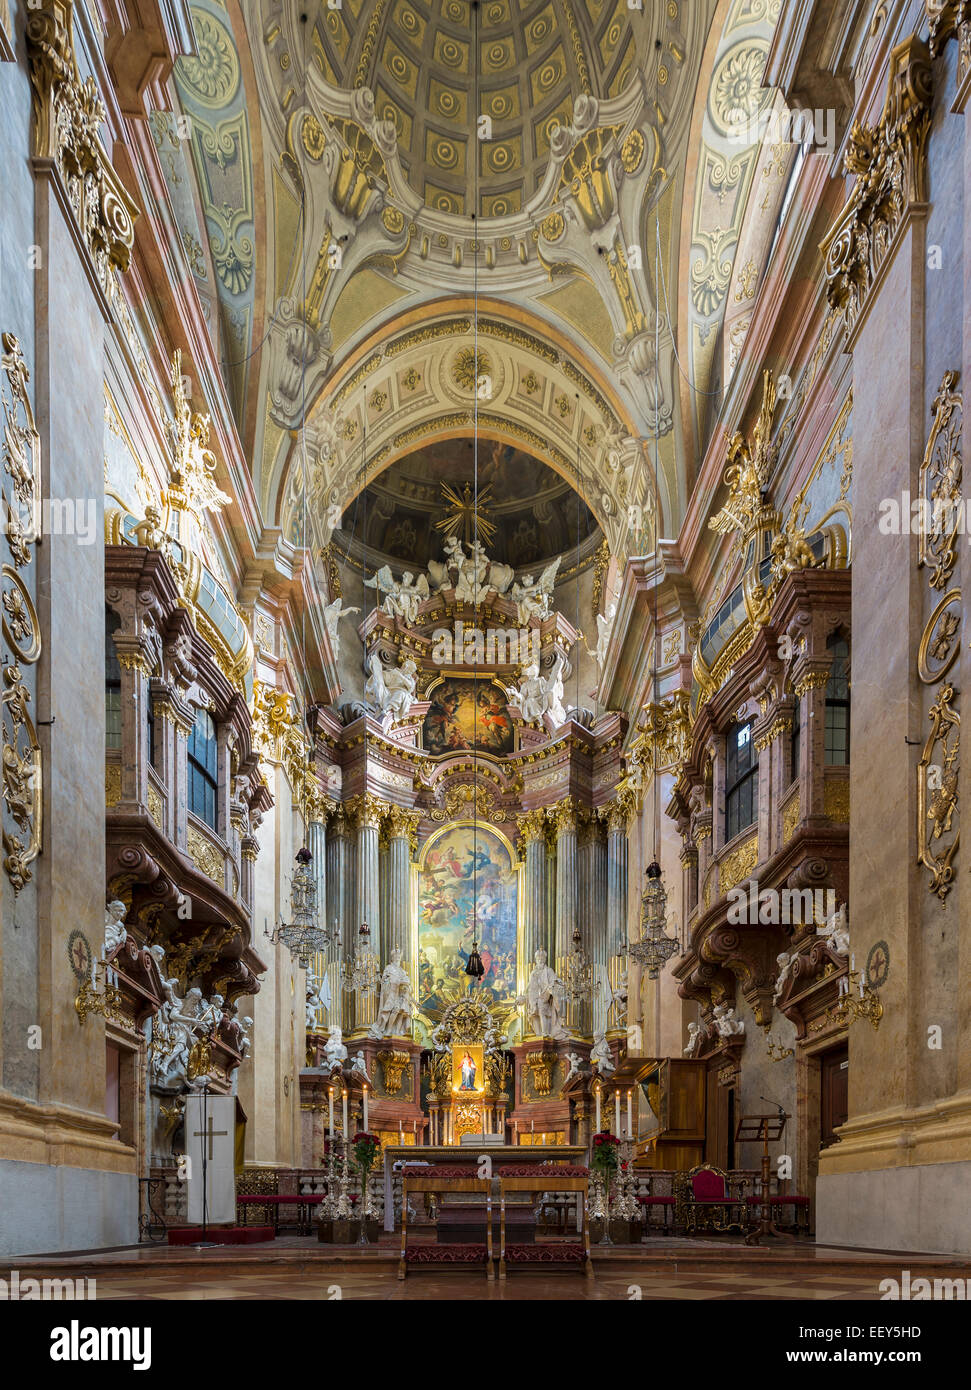 Altar und Interieur der St. Peters-Pfarrkirche in der alten Stadt Wien, Österreich Stockfoto